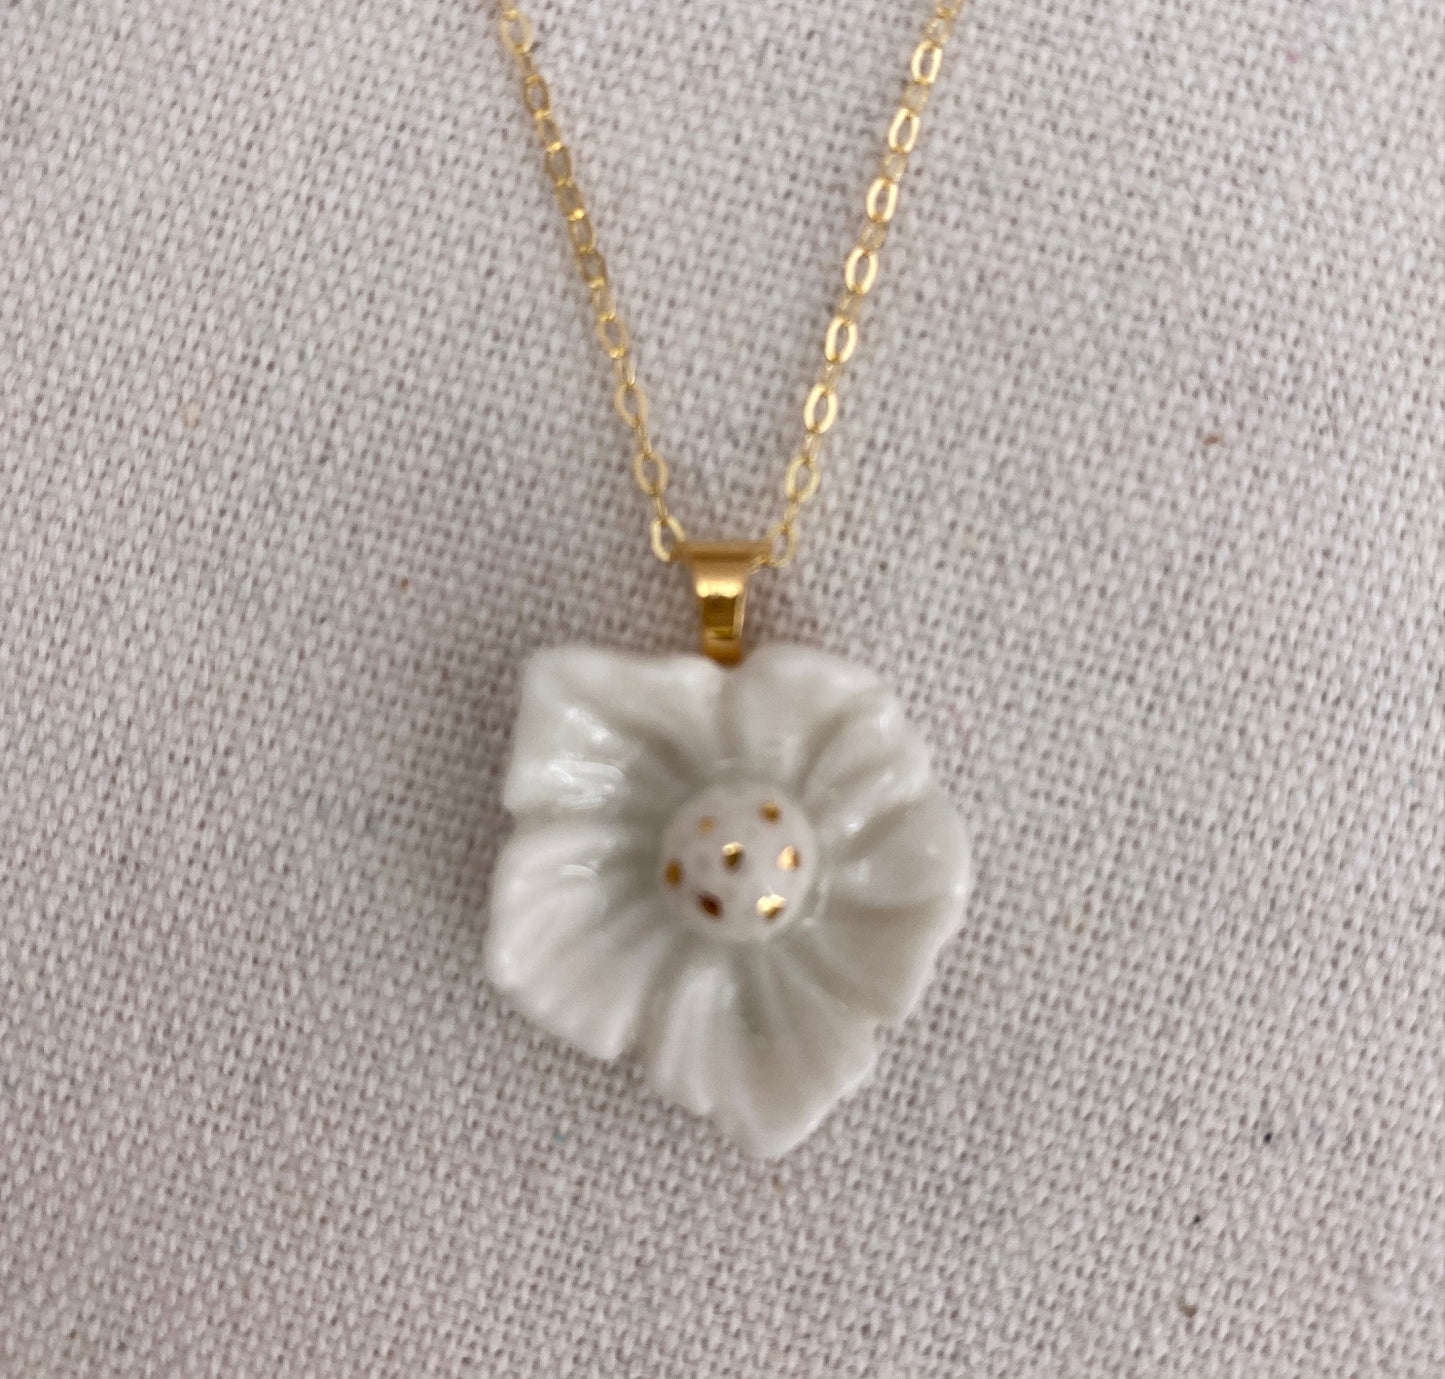 Dogwood flower porcelain necklace.